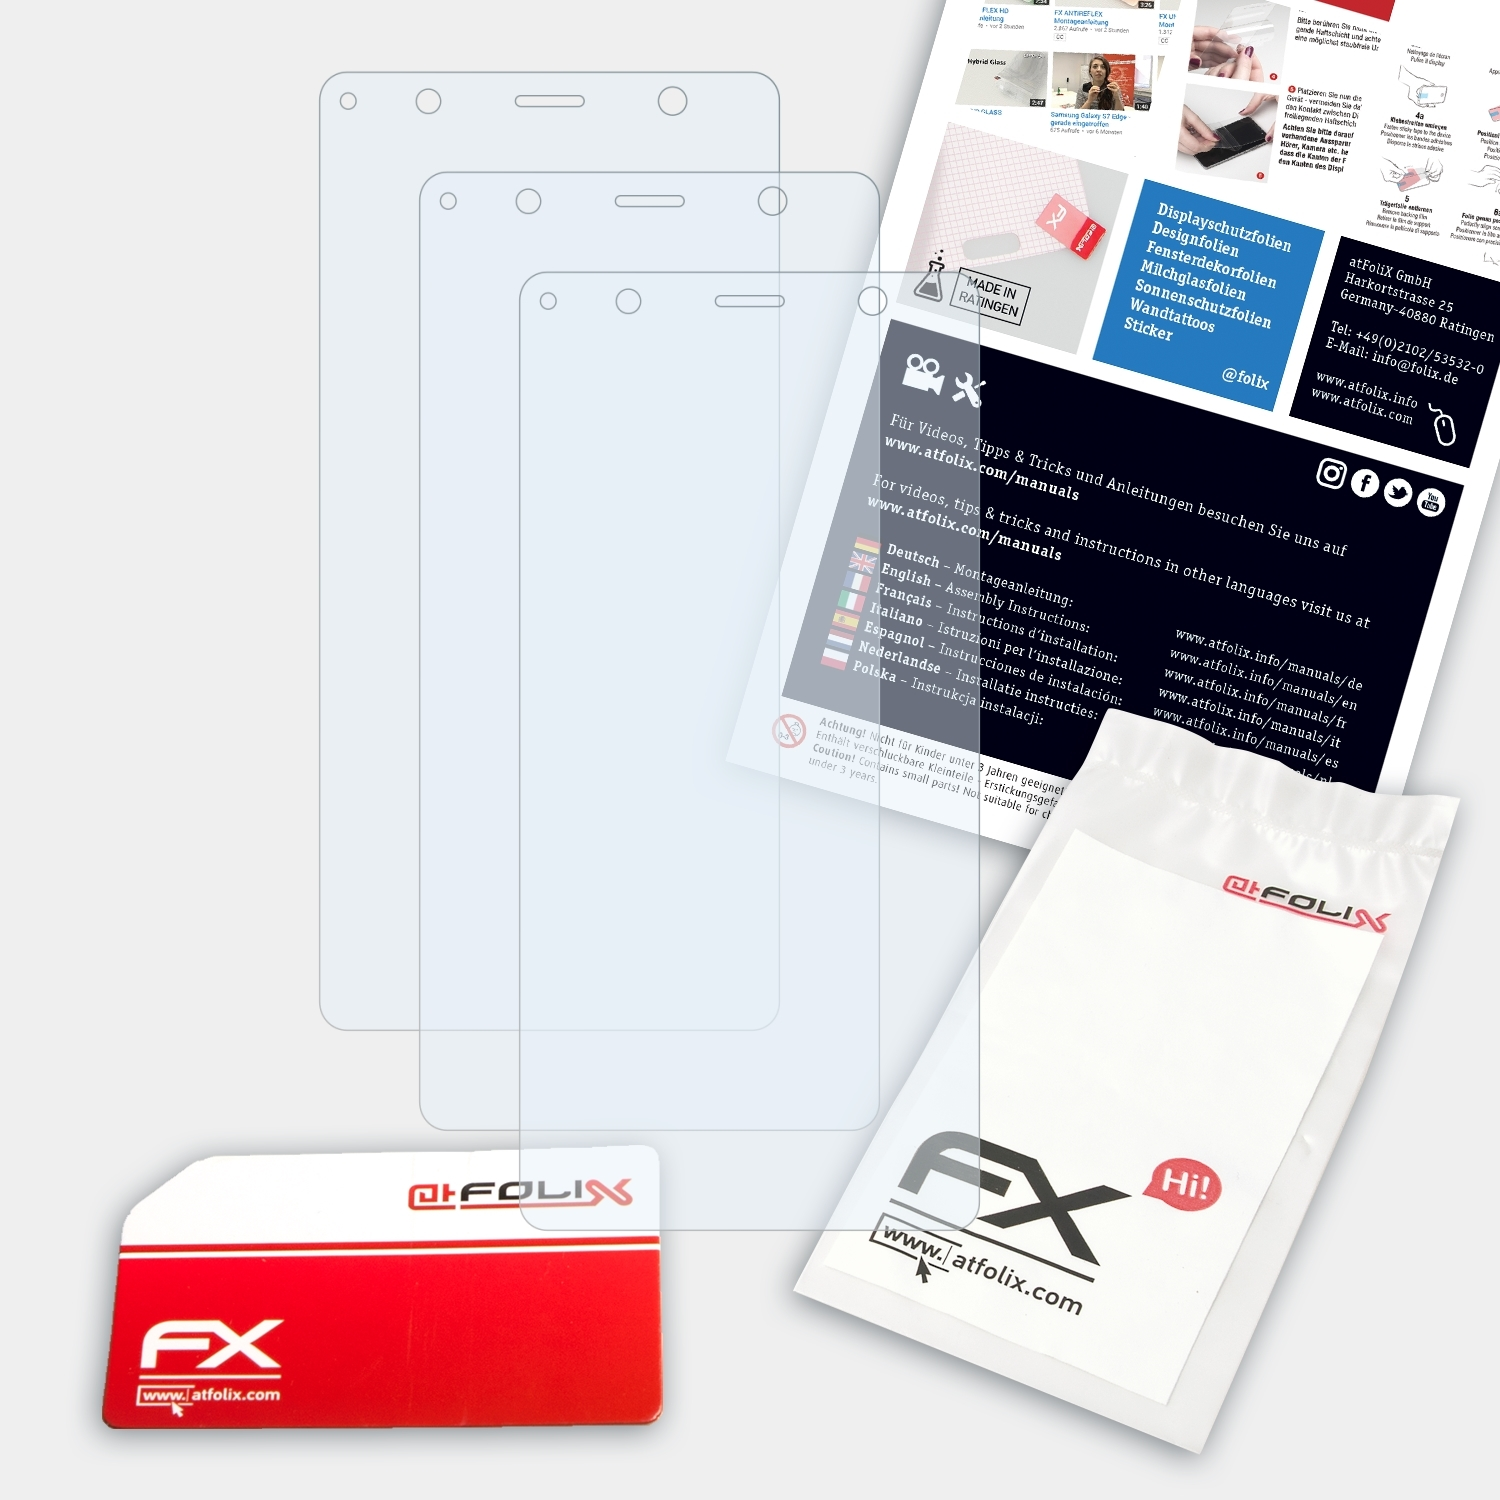 Xperia Premium) FX-Clear Sony ATFOLIX 3x XZ2 Displayschutz(für